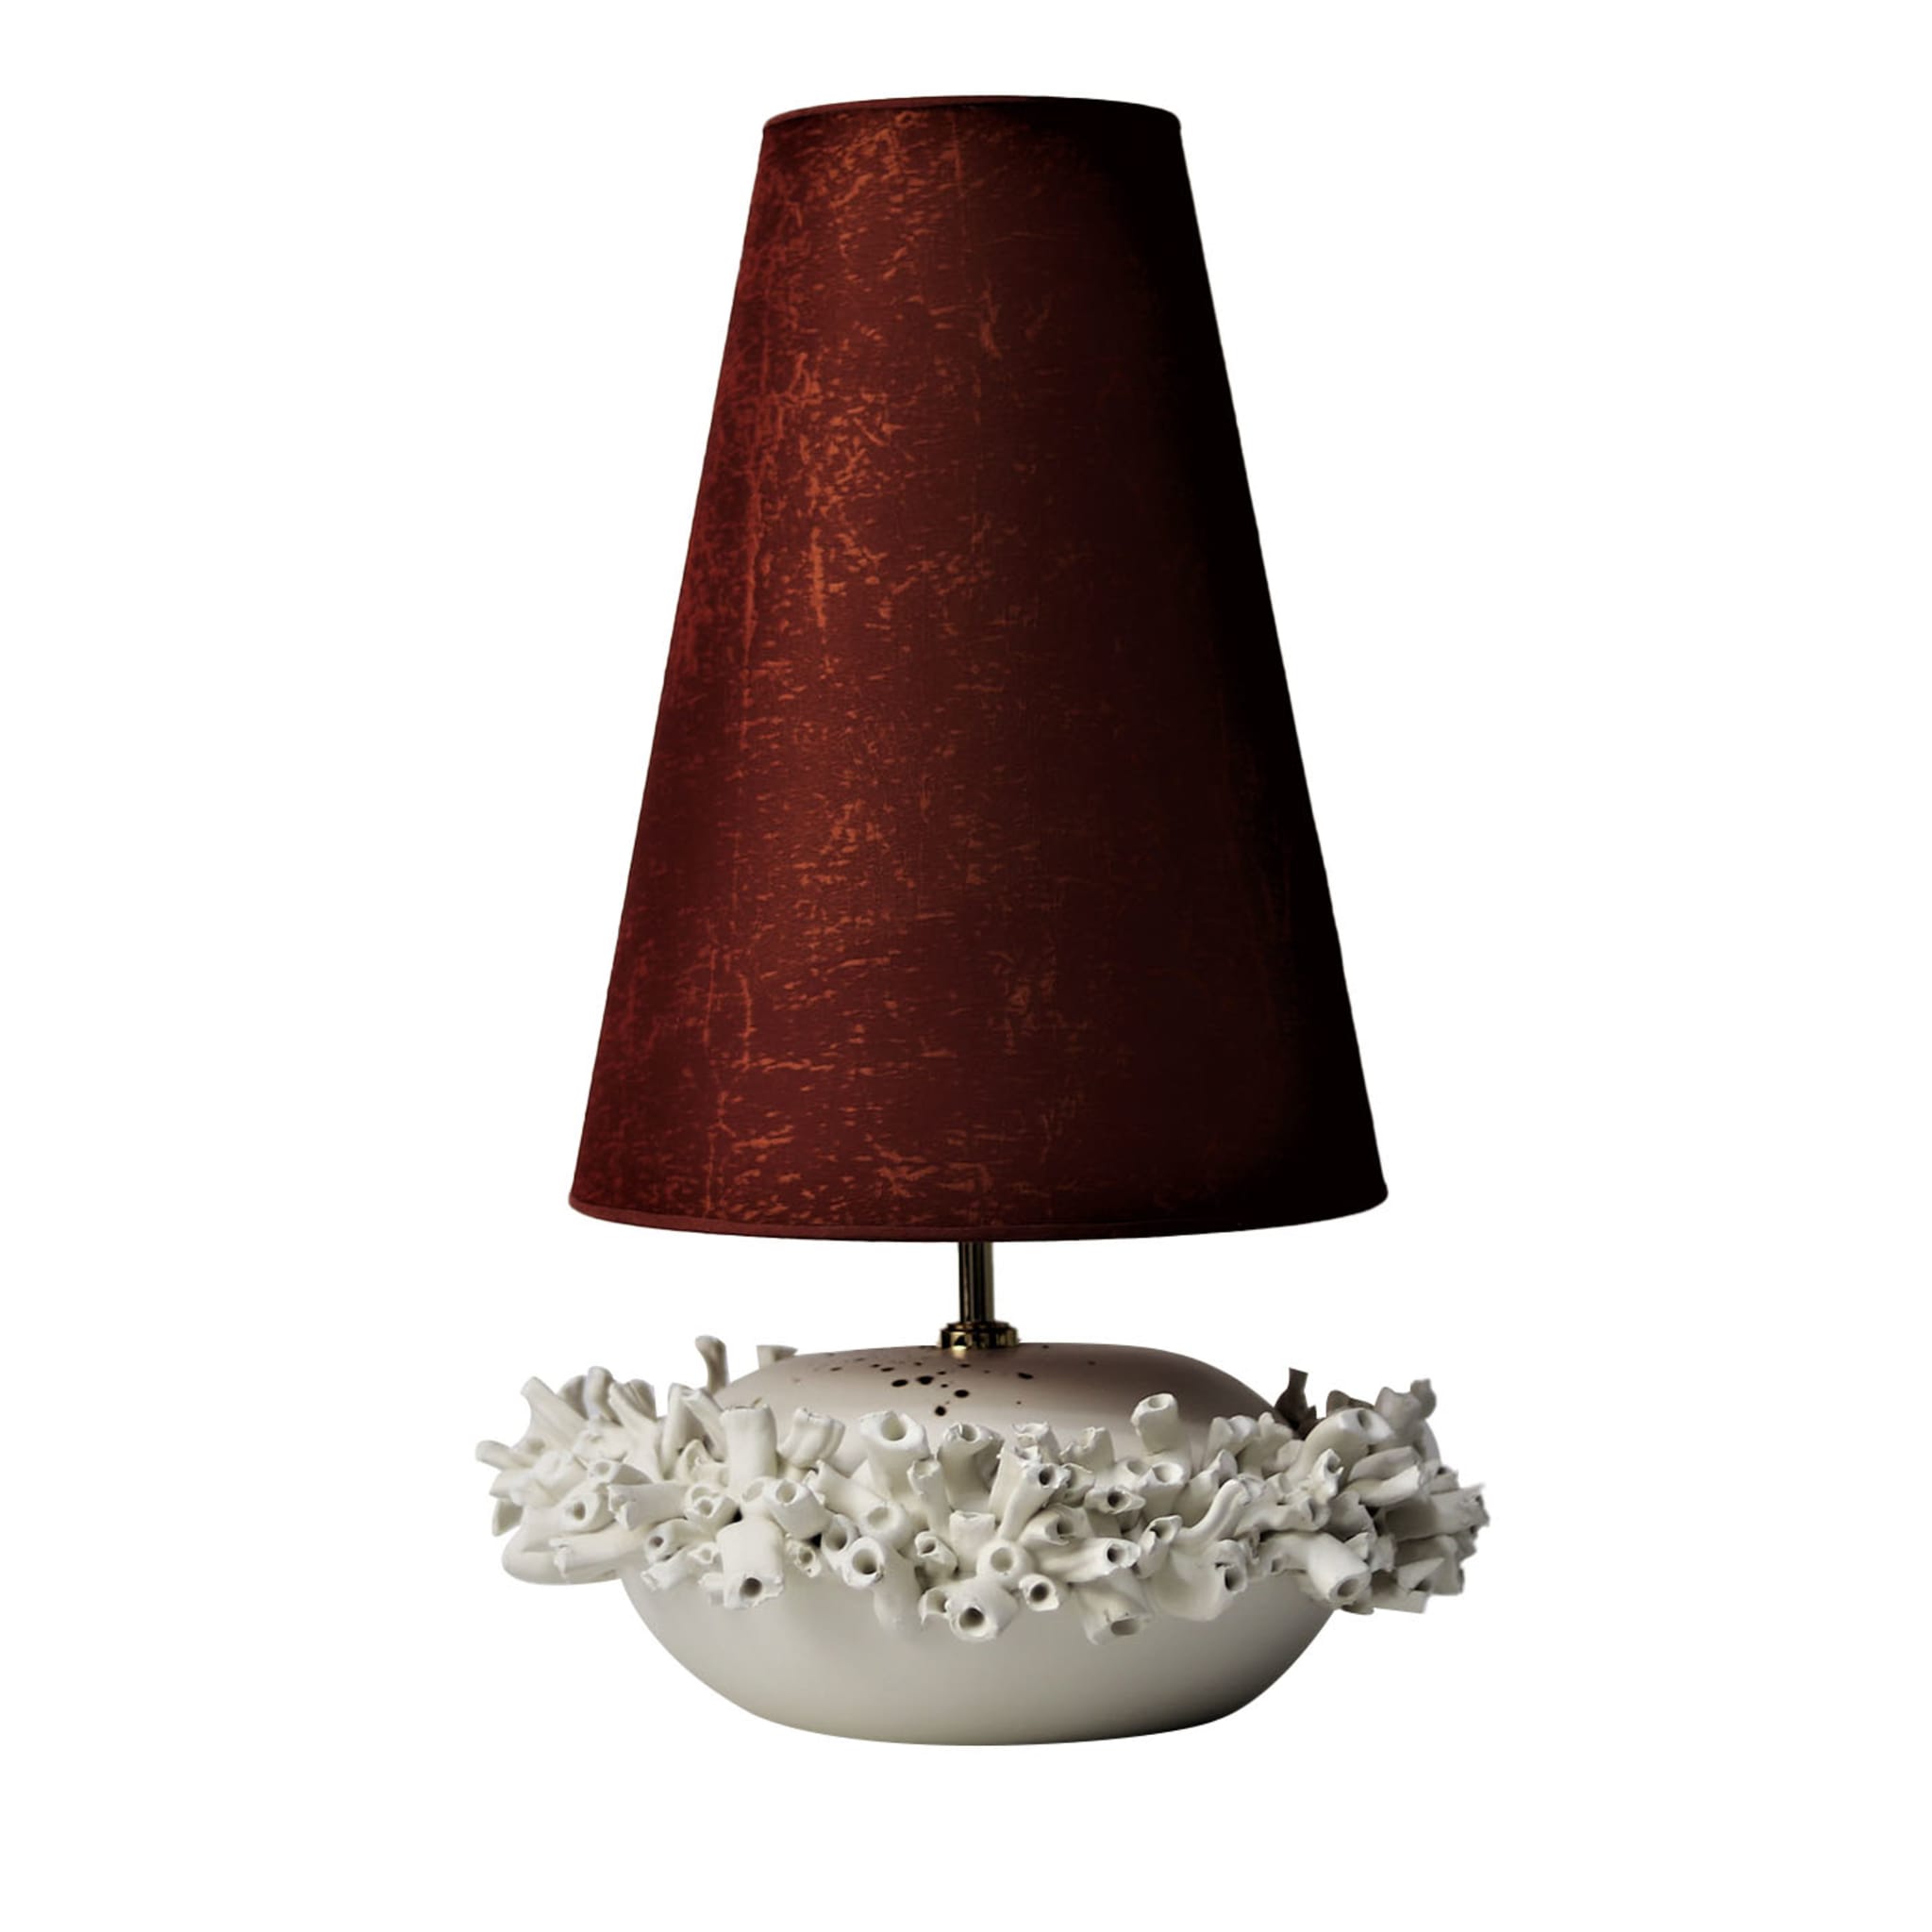 Lampada da tavolo Anemoni rossa e bianca - Vista principale